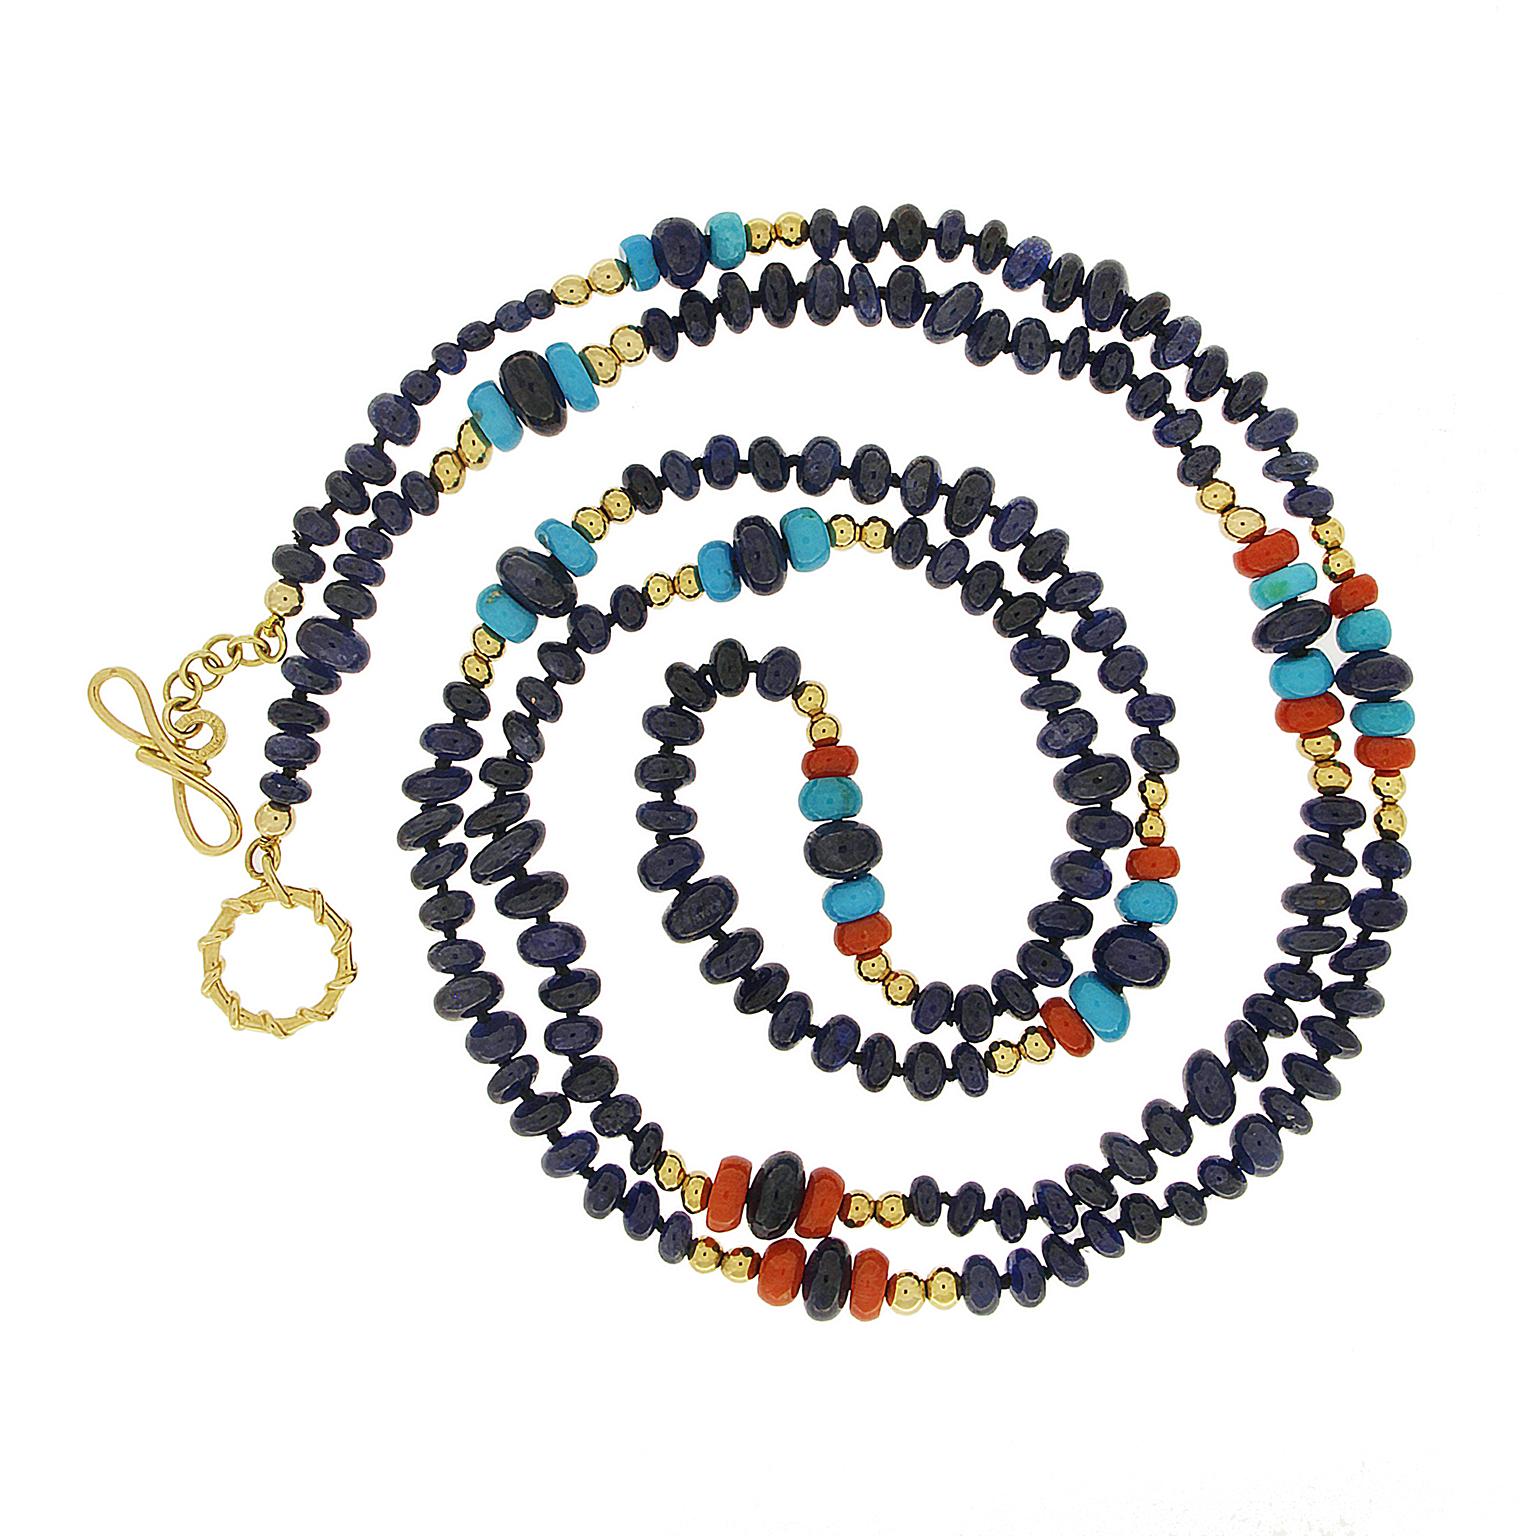 Eine Vielzahl von Edelsteinen zieren diese Halskette. Saphire stehen im Mittelpunkt, ergänzt durch Perlen aus roter Koralle und Dornröschen-Türkis. Perlen aus 18-karätigem Gelbgold verbinden sich mit den Edelsteinen in verschiedenen Designs und